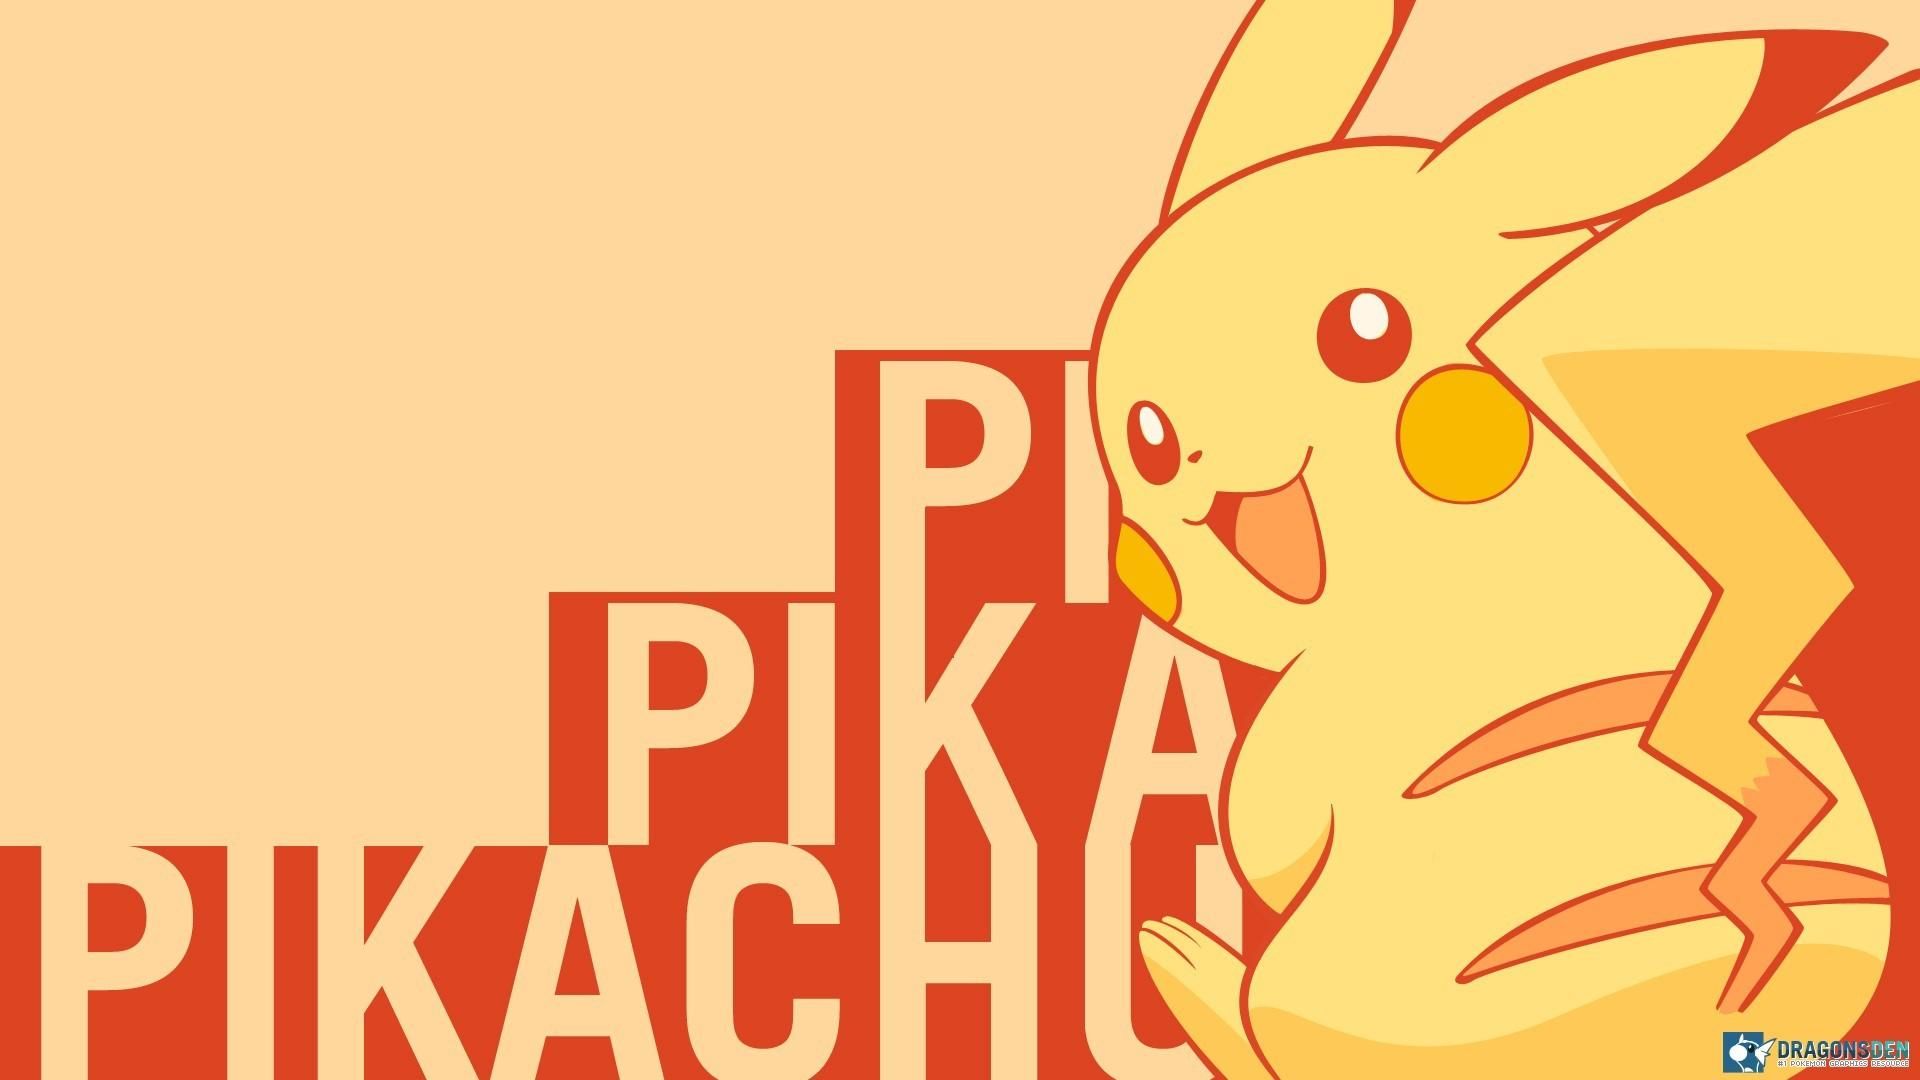 pikachu wallpaper hd 1920x1080